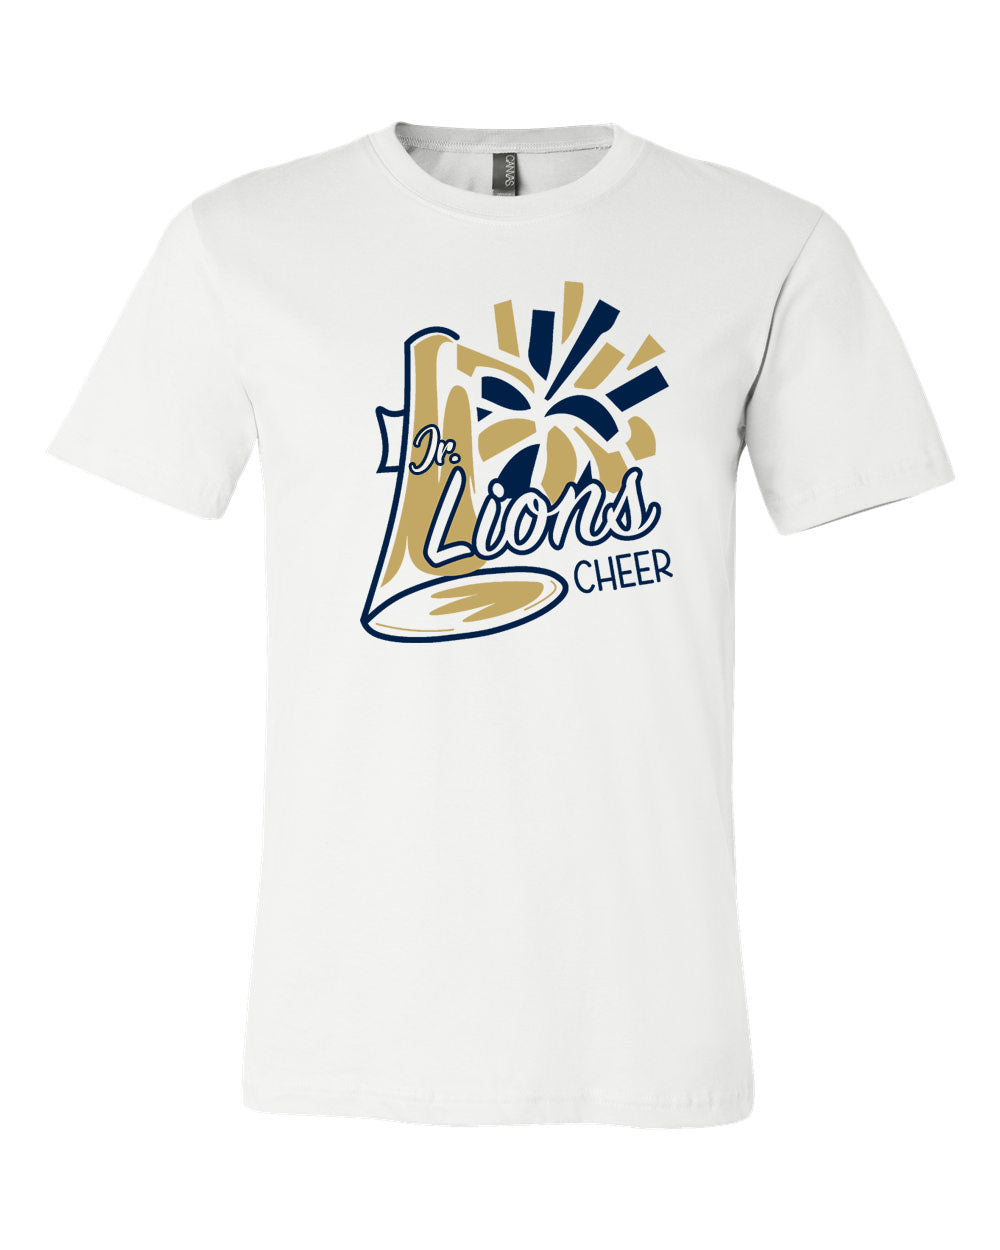 Jr Lions Cheer design 2 T-Shirt